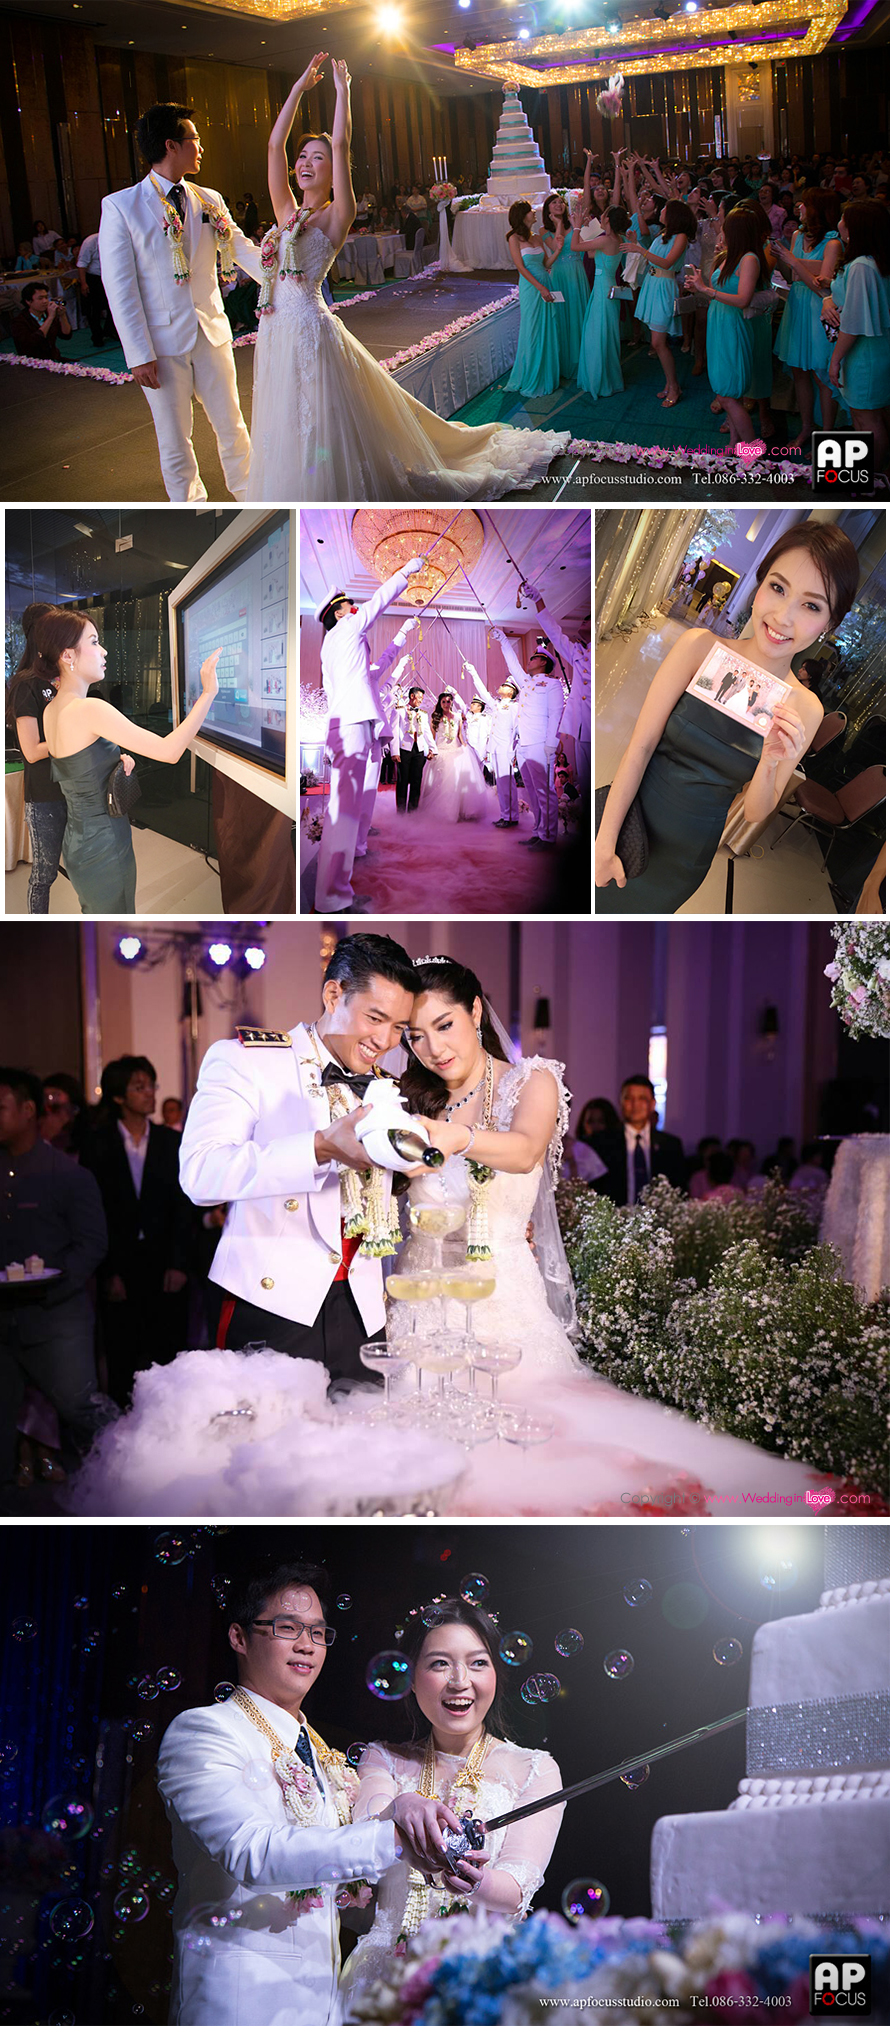 ปรินท์รูปด่วน INSTAGRAM ถ่ายภาพ ช่างภาพ แต่งงาน เจ้าสาว ถ่ายรูปหน้างาน  AP focus สตูดิโอ แต่งงาน  รับออกแบบ ถ่ายภาพงานแต่ง